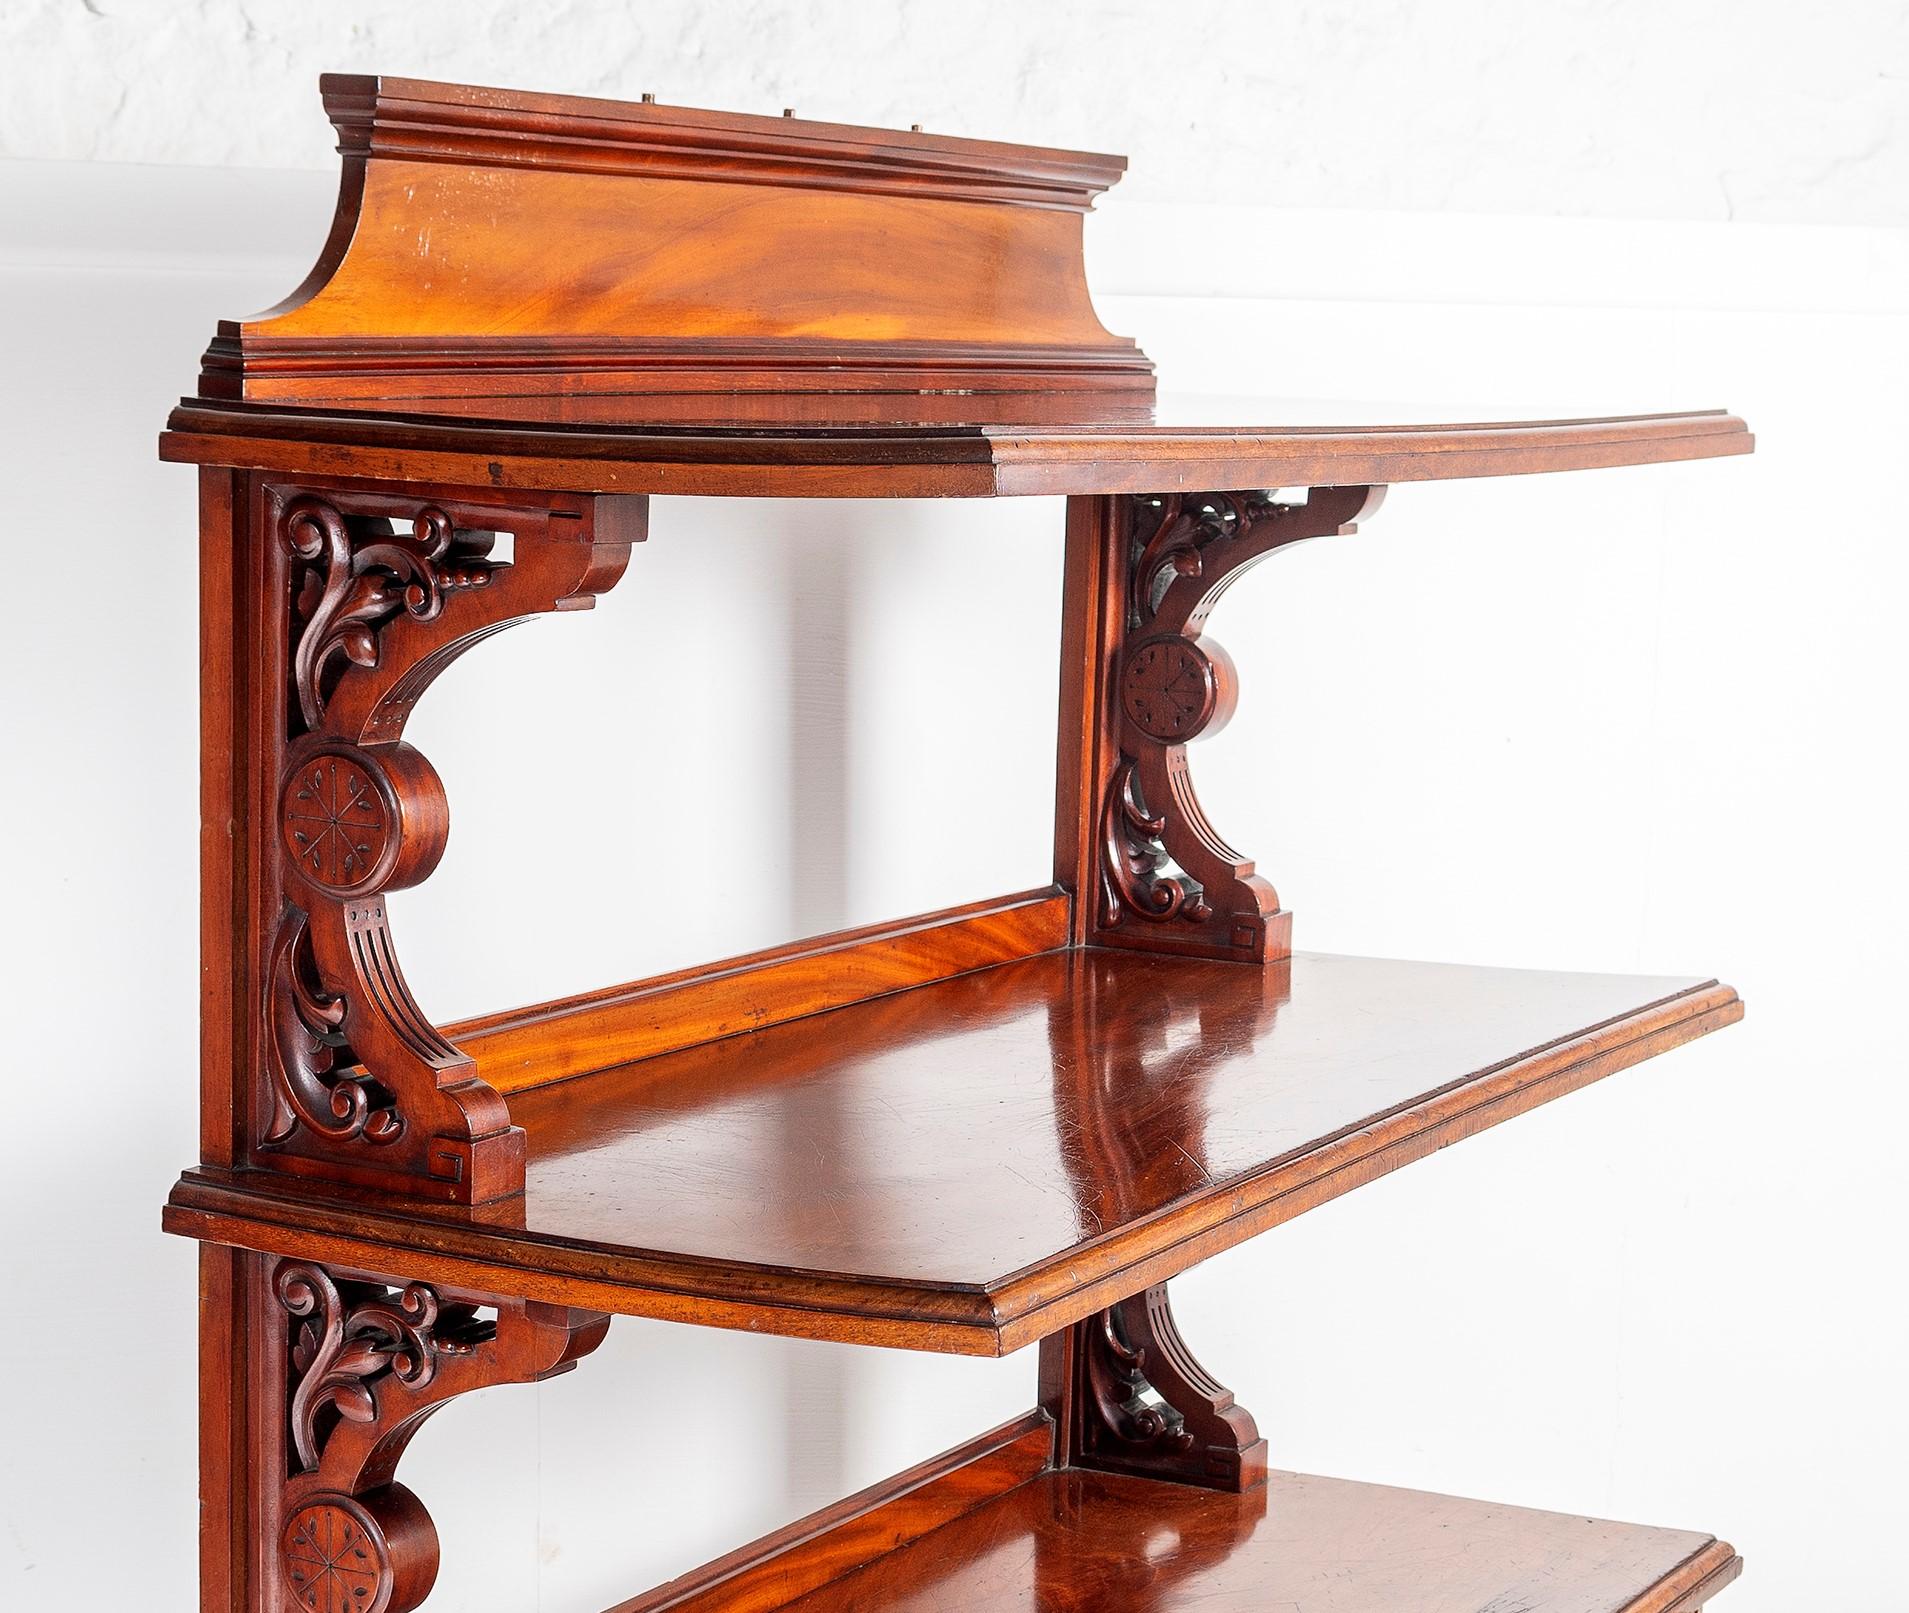 Buffet à trois niveaux en acajou de style victorien, anglais vers 1860. 1860, avec trois étagères rectangulaires soutenues par des consoles sculptées de volutes. L'étagère inférieure est équipée de deux tiroirs en frise, le tout reposant sur des